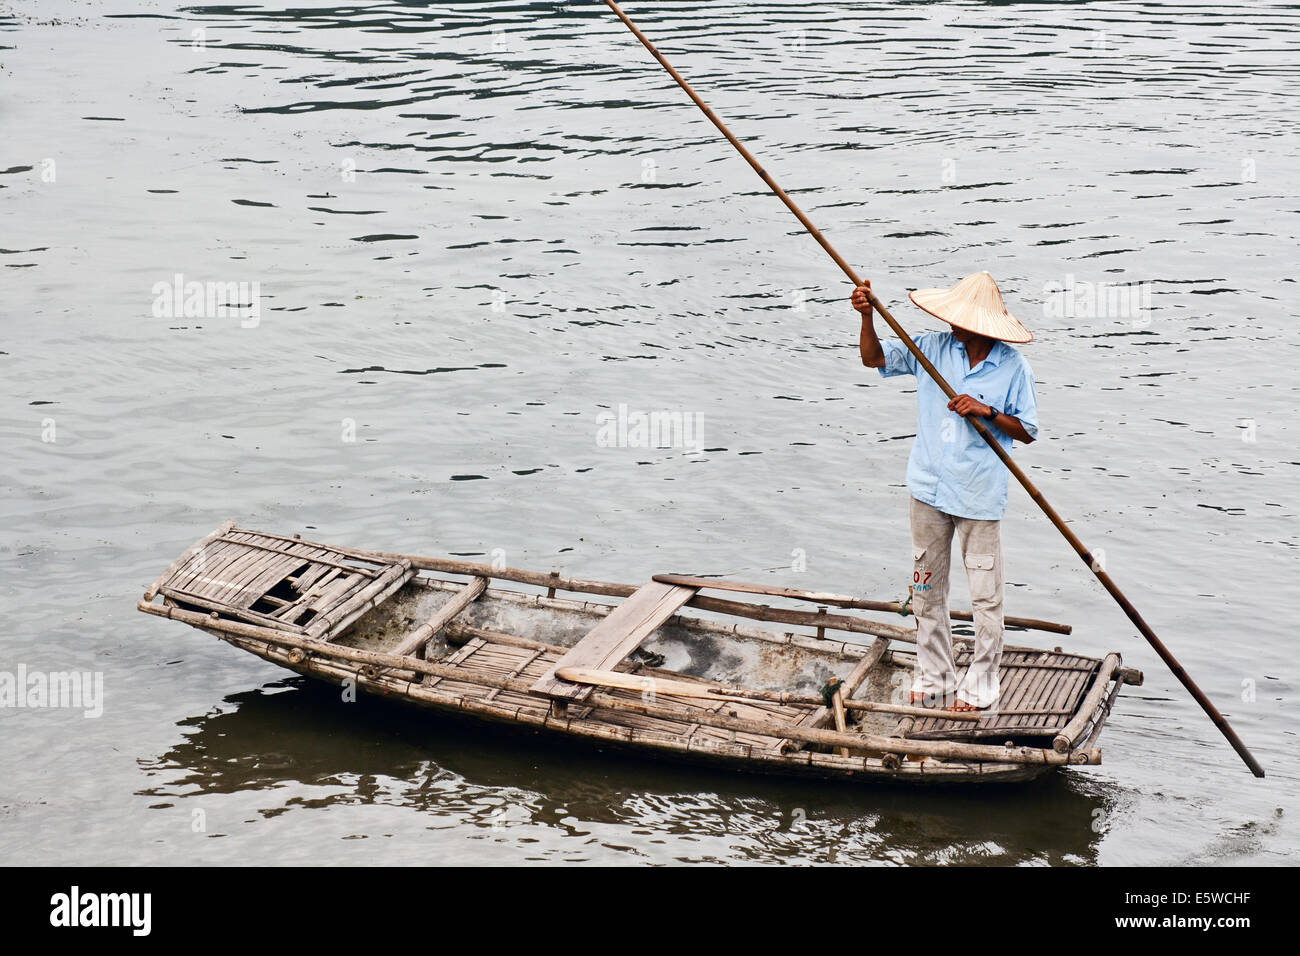 Oarsman remar por el río en una balsa de bambú personalizados en Vietnam del Norte. Modo de transporte tradicional en ríos y lagos y la escena de la vida rural. Foto de stock